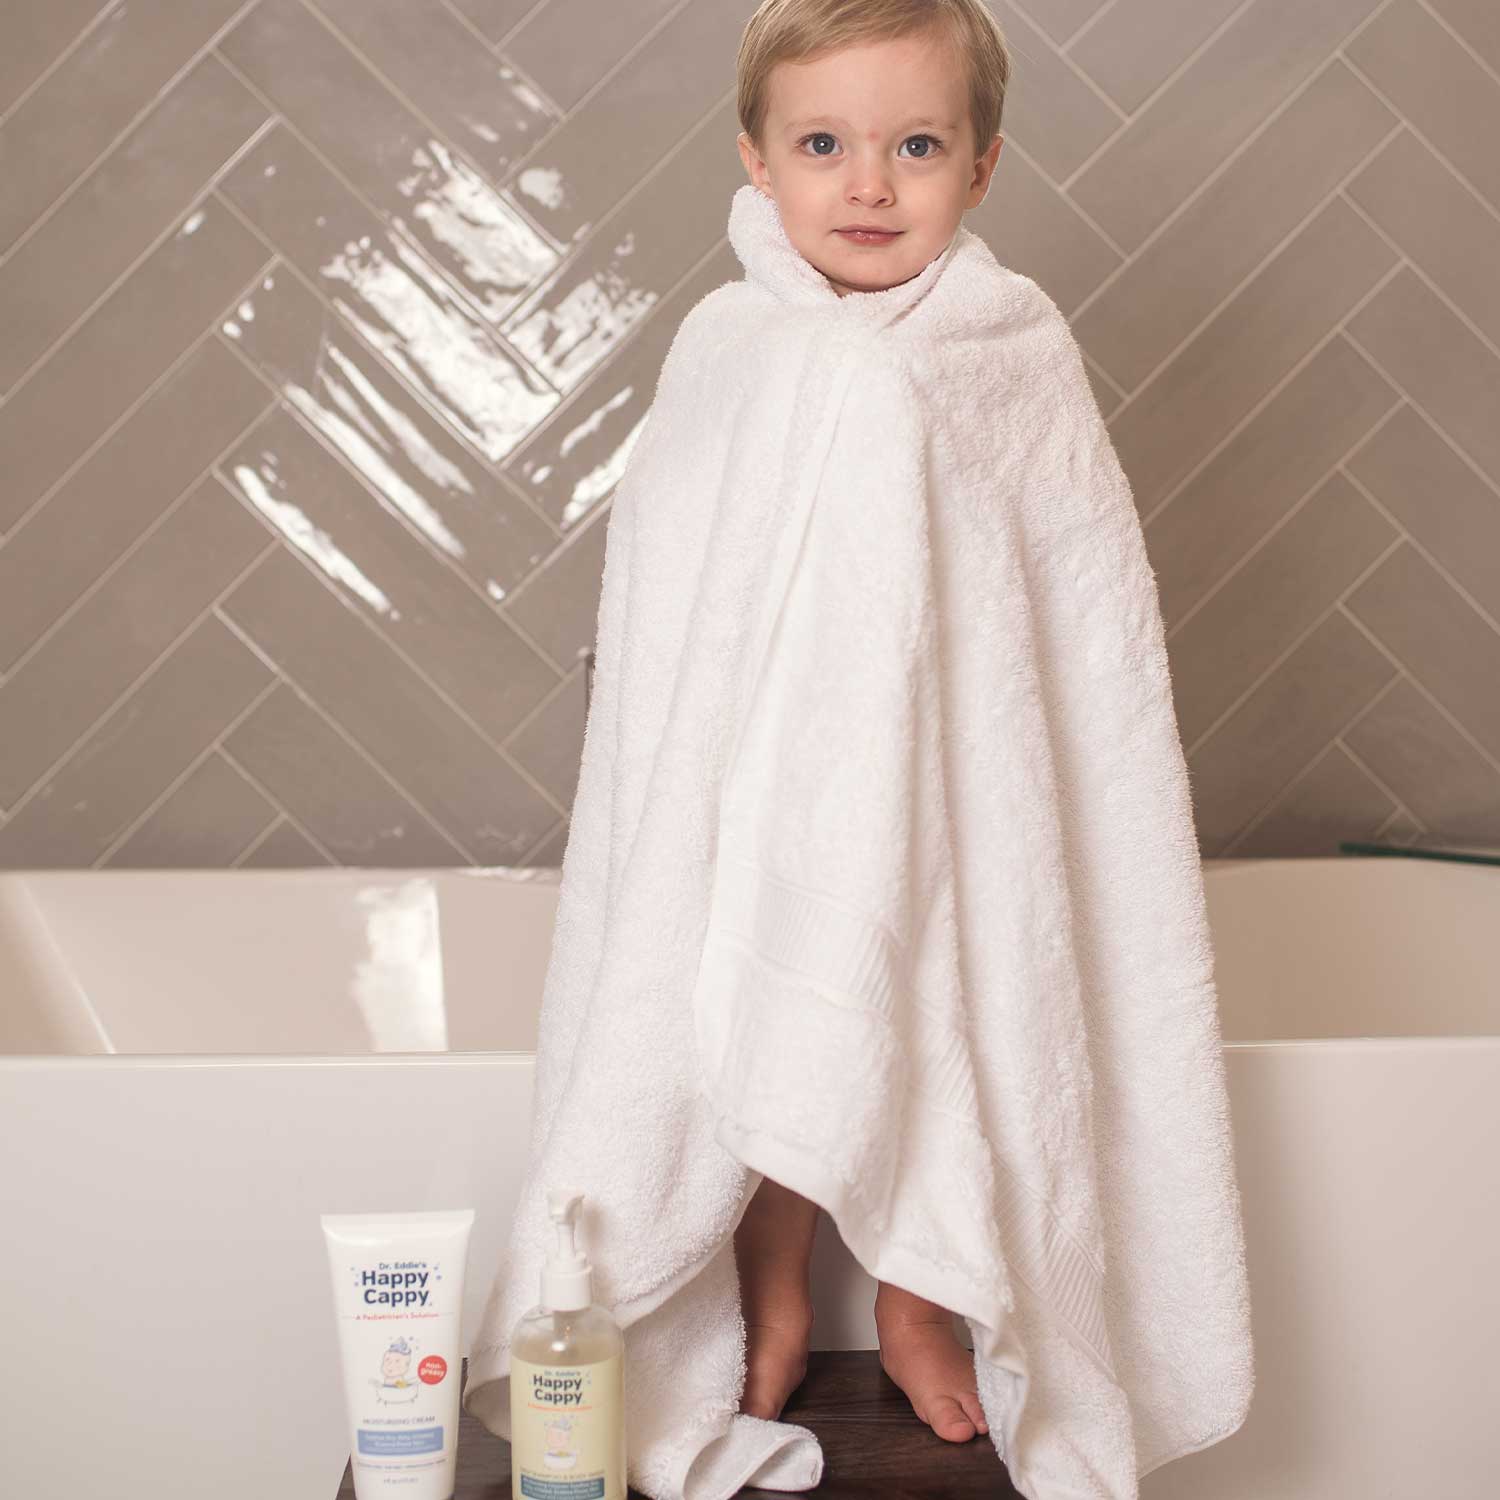 shampoo diario para bebe con eccema